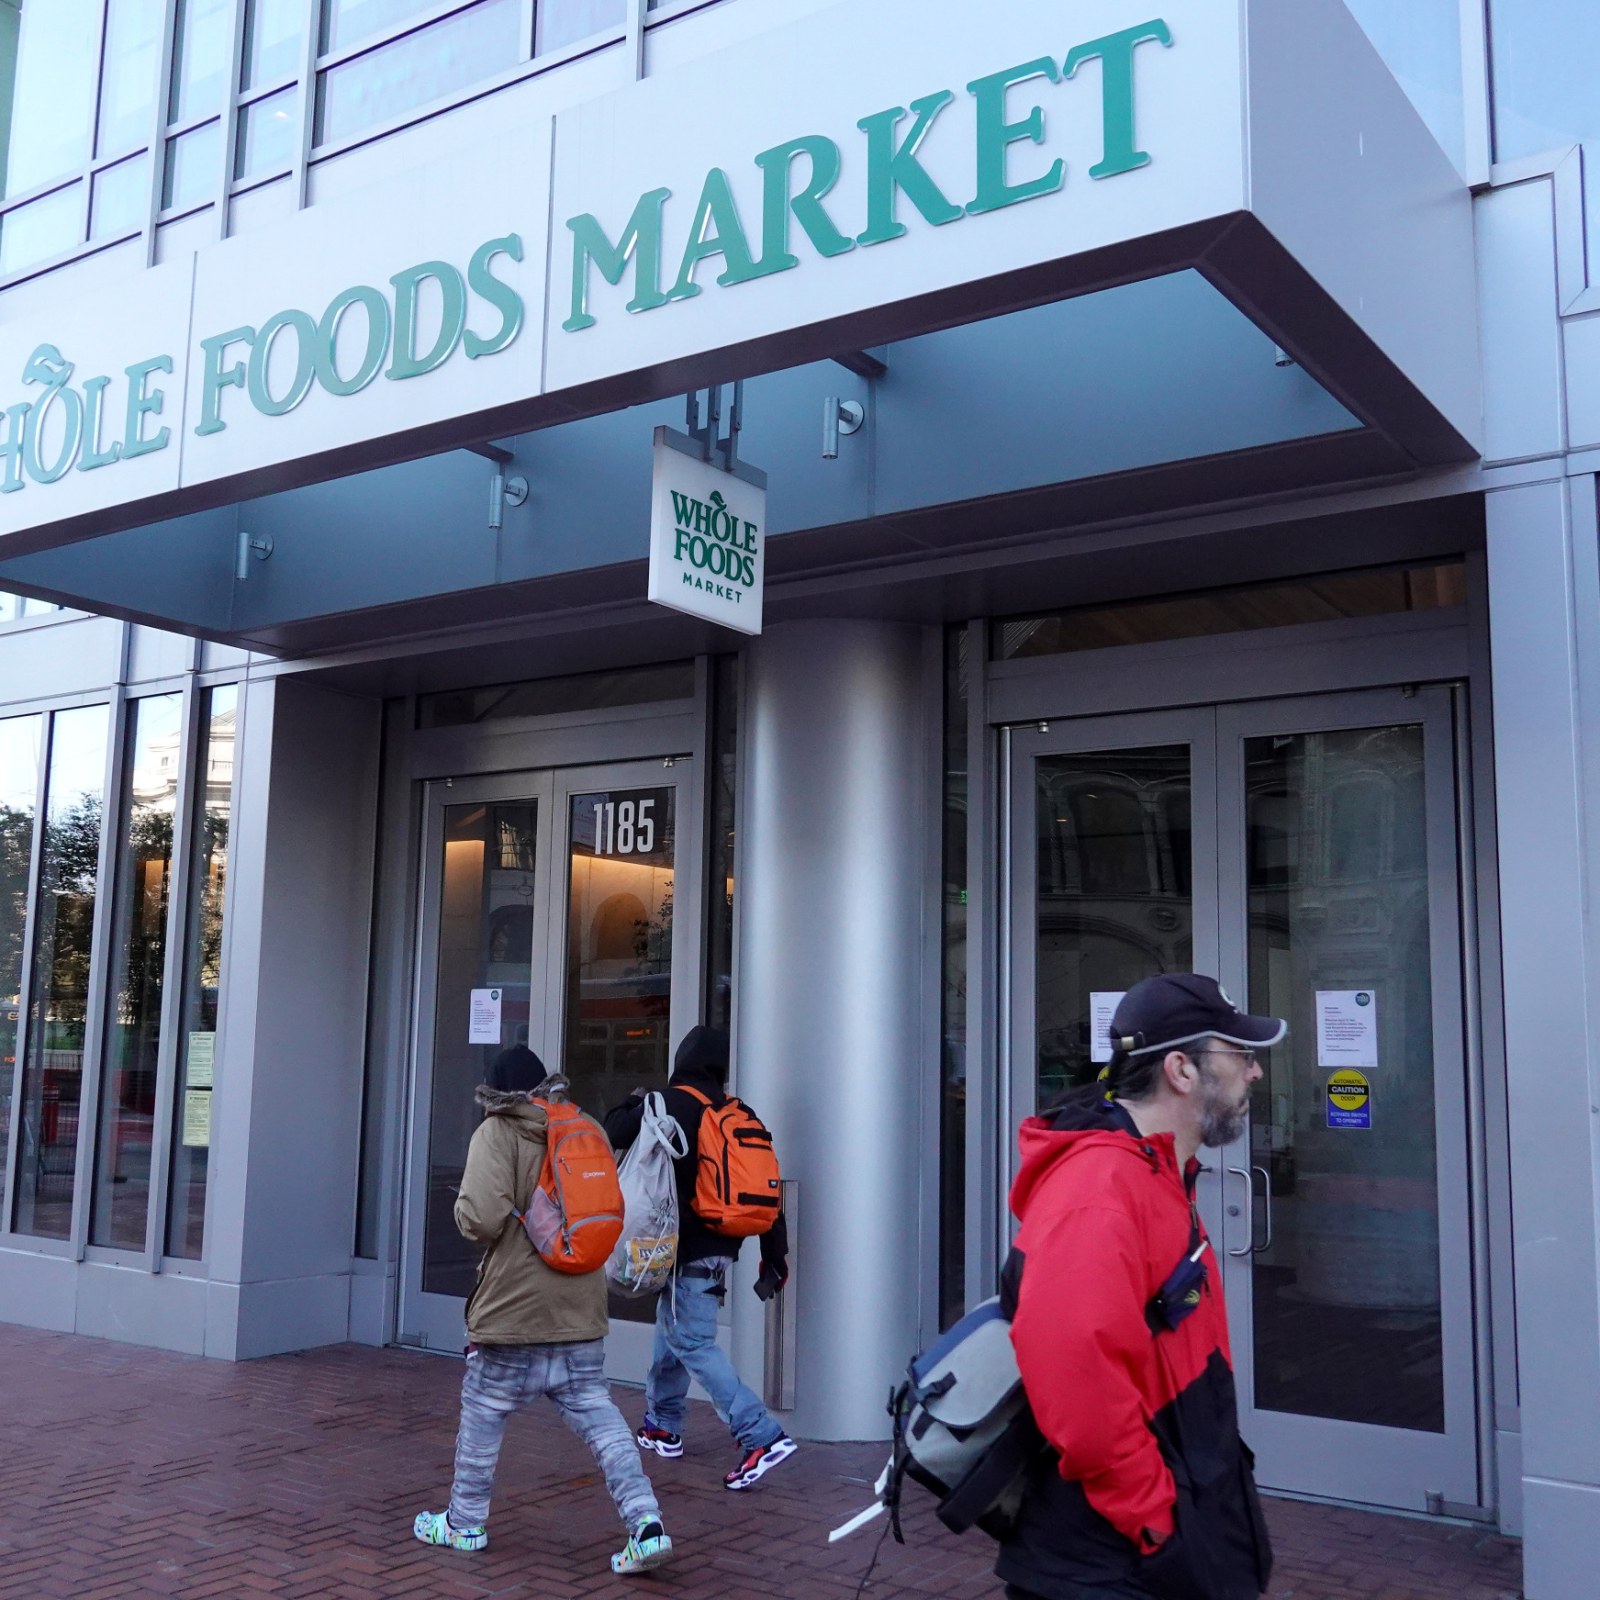 Whole Foods Market (@WholeFoods) / X